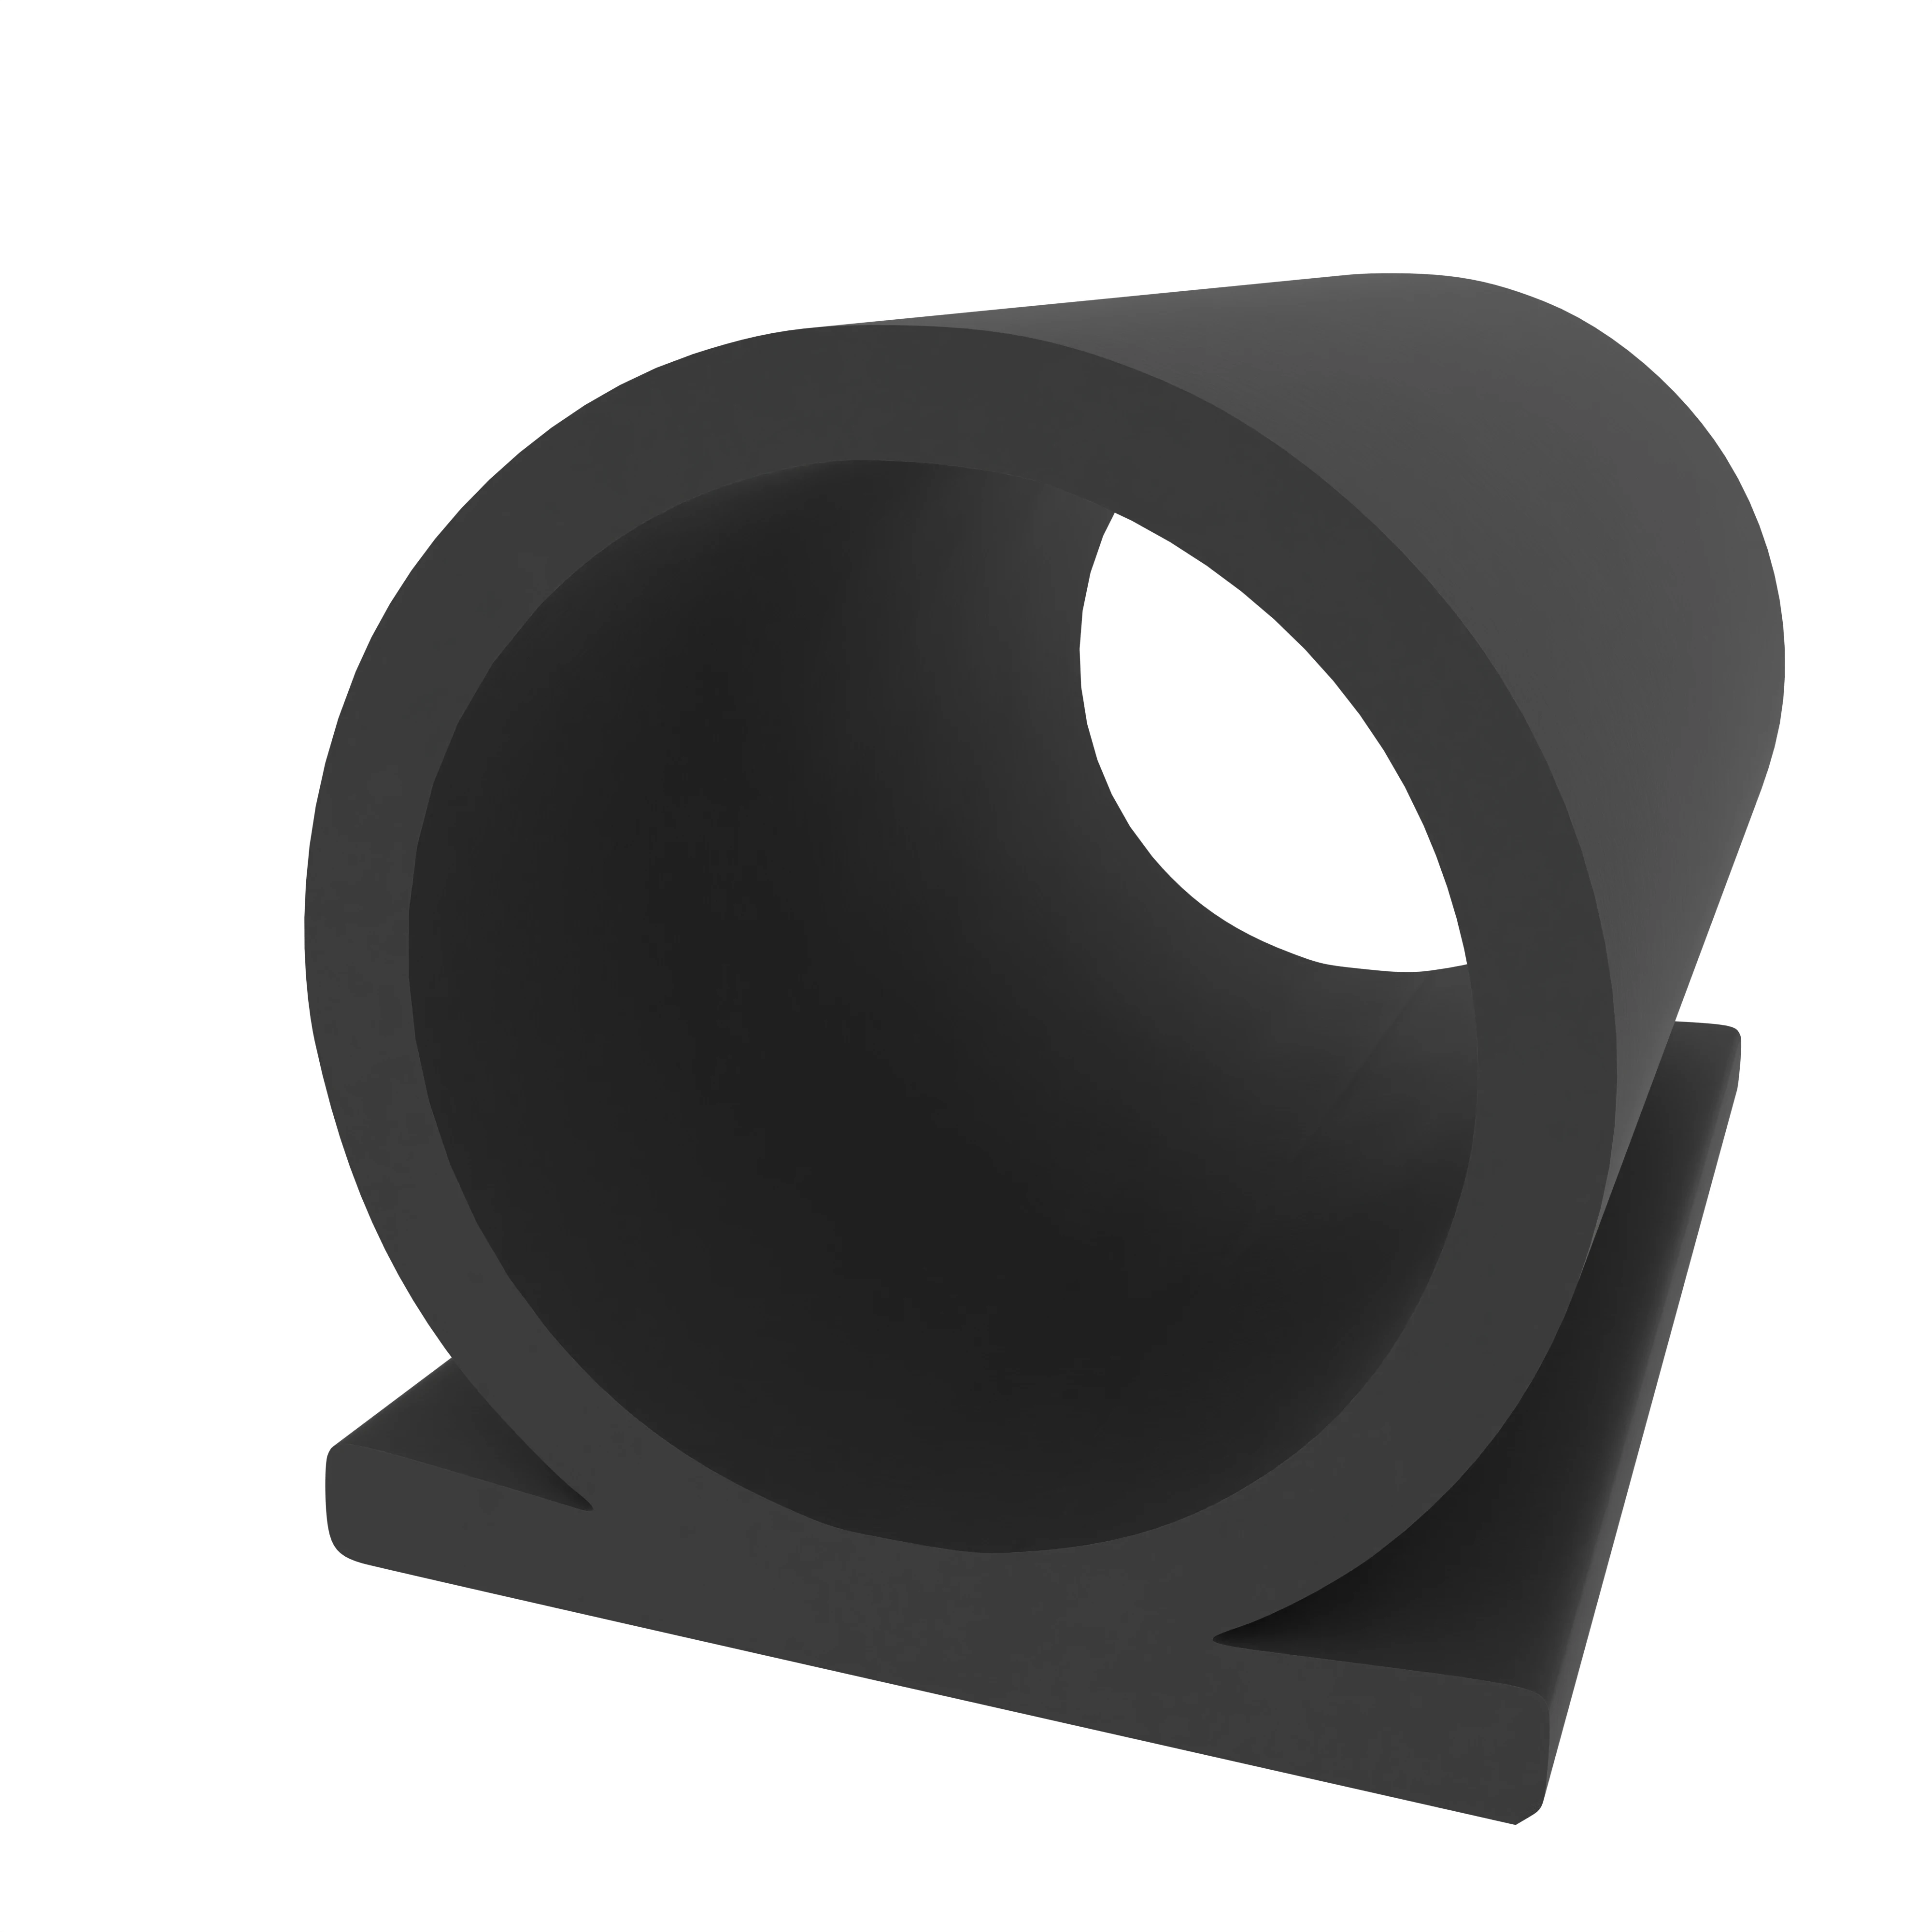 Klebedichtung mit Omega-Profil | Spaltbreite: 1 – 8 mm | Farbe: schwarz